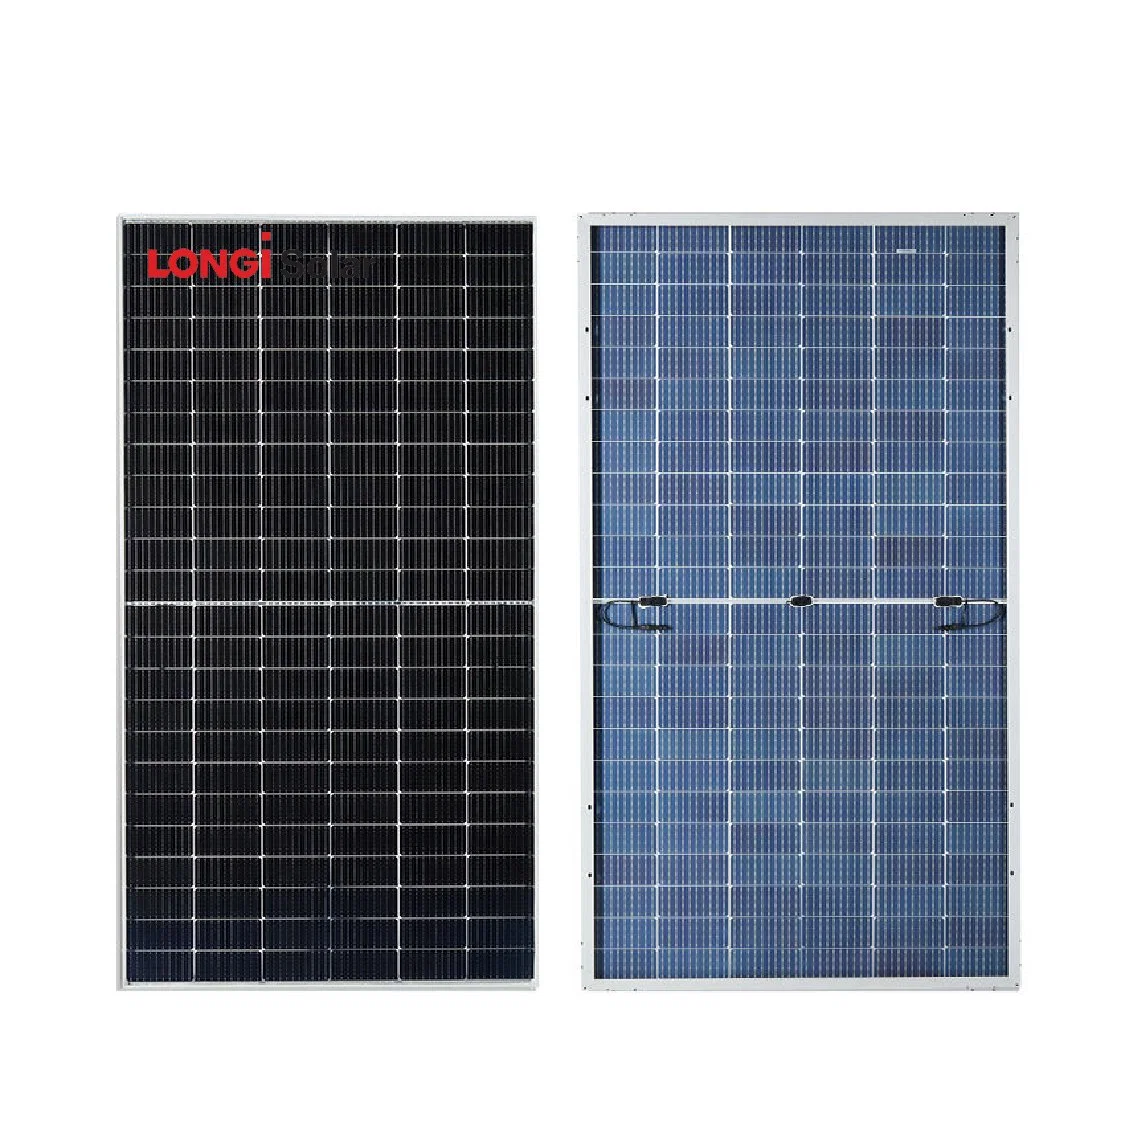 Los paneles solares longi Mono Bificial Perc PV del módulo de 530W 535W 540W 545W 550W de energía del Panel solar con 25 años de garantía